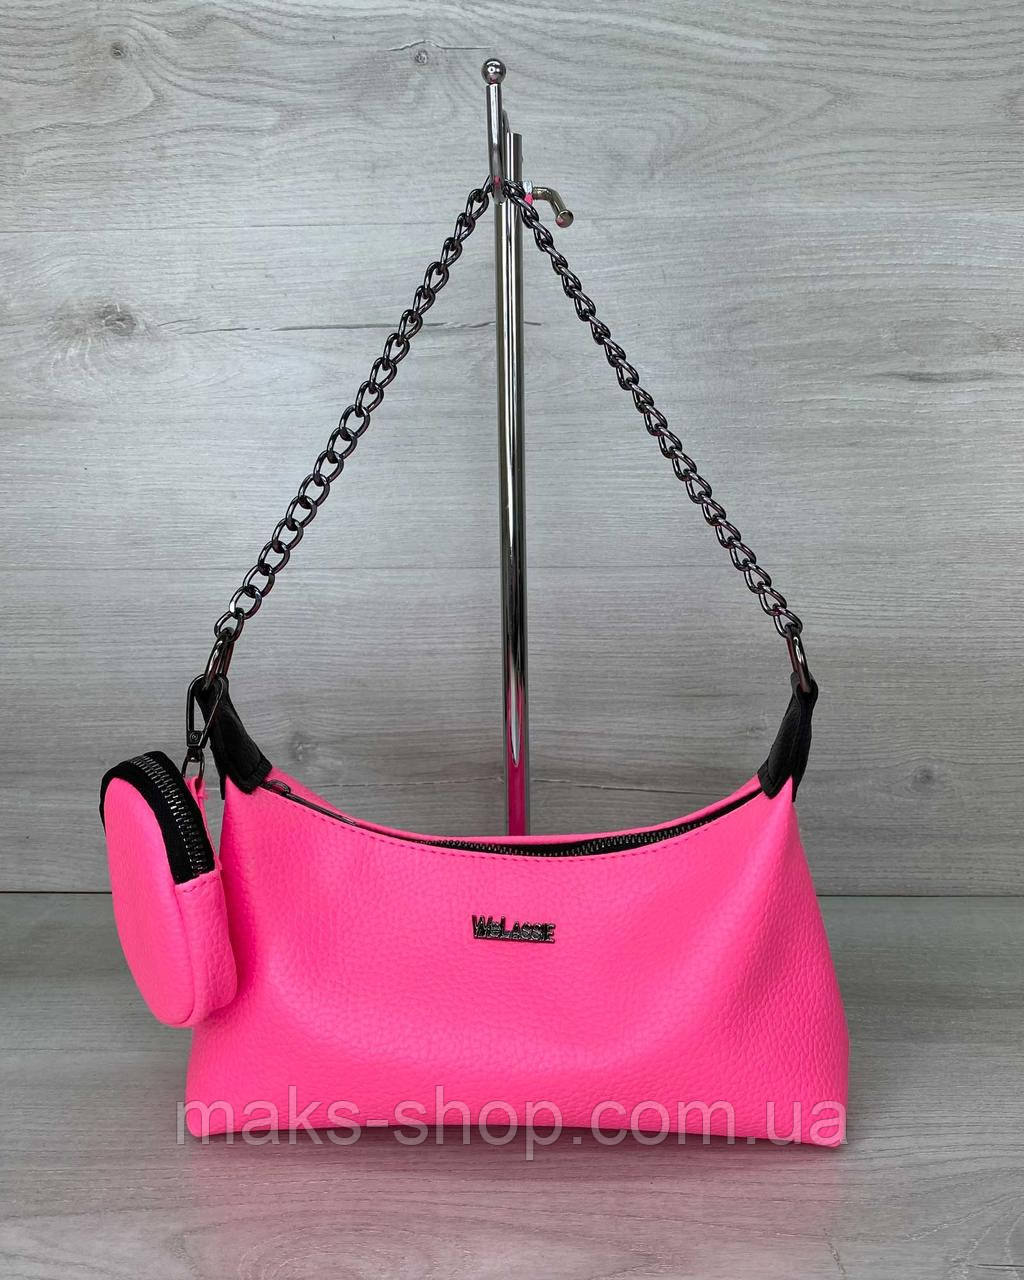 Яскрава жіноча сумка рожева міні з ланцюжком, молодіжна сумочка-багет Лойс